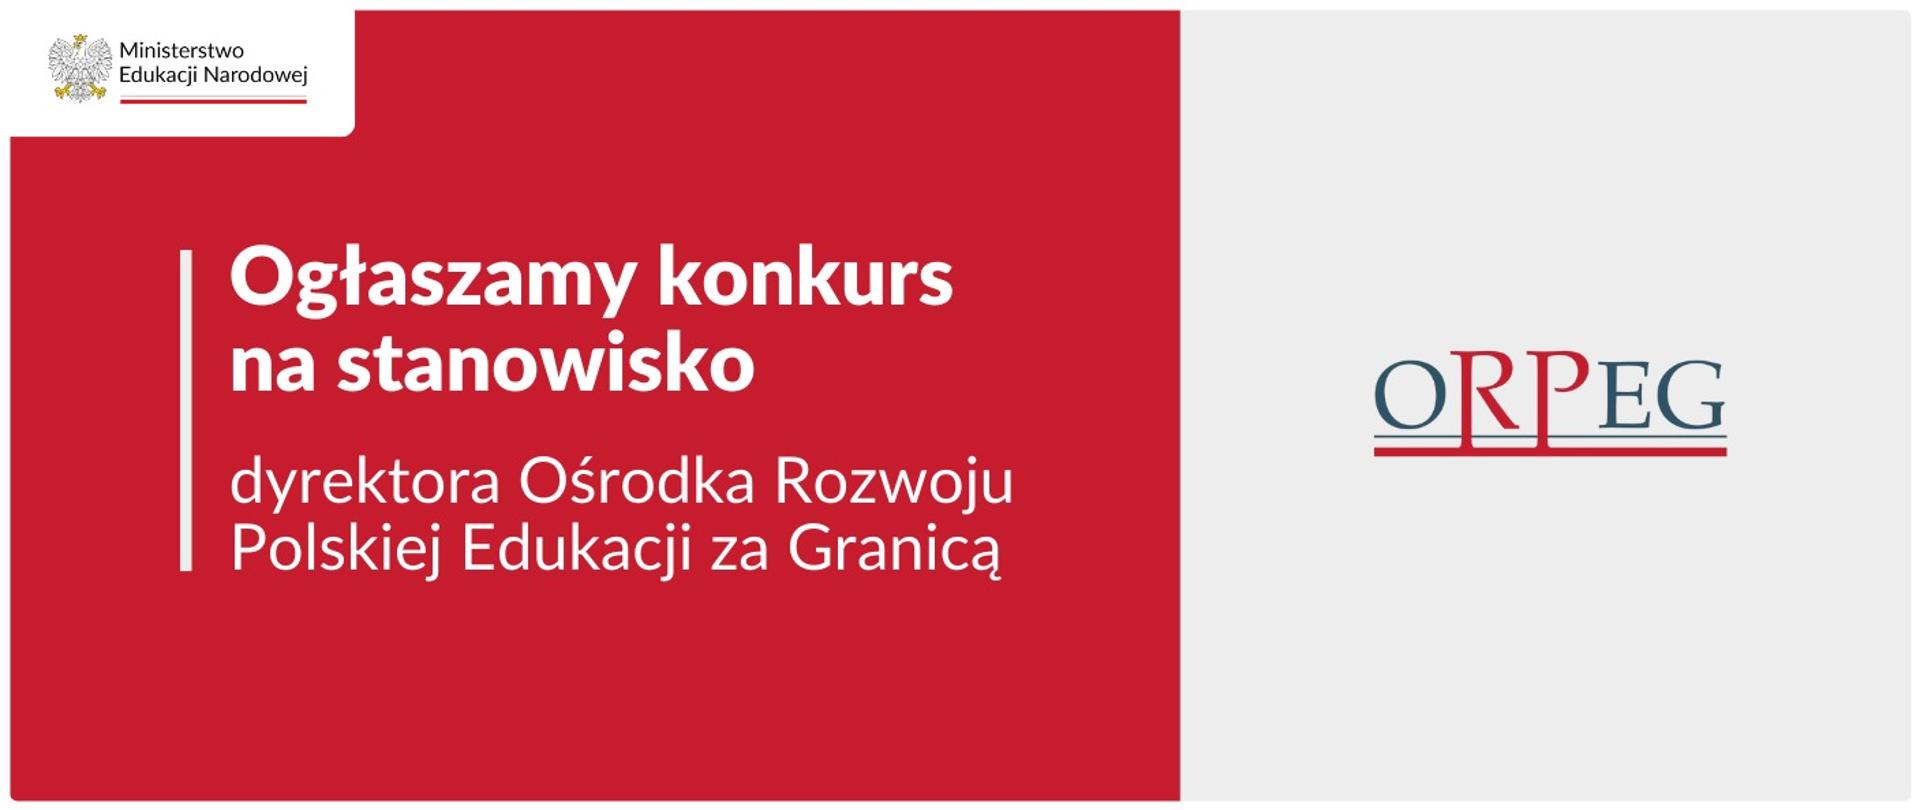 Ogłaszamy konkurs na stanowisko dyrektora Ośrodka Rozwoju Polskiej Edukacji za Granicą